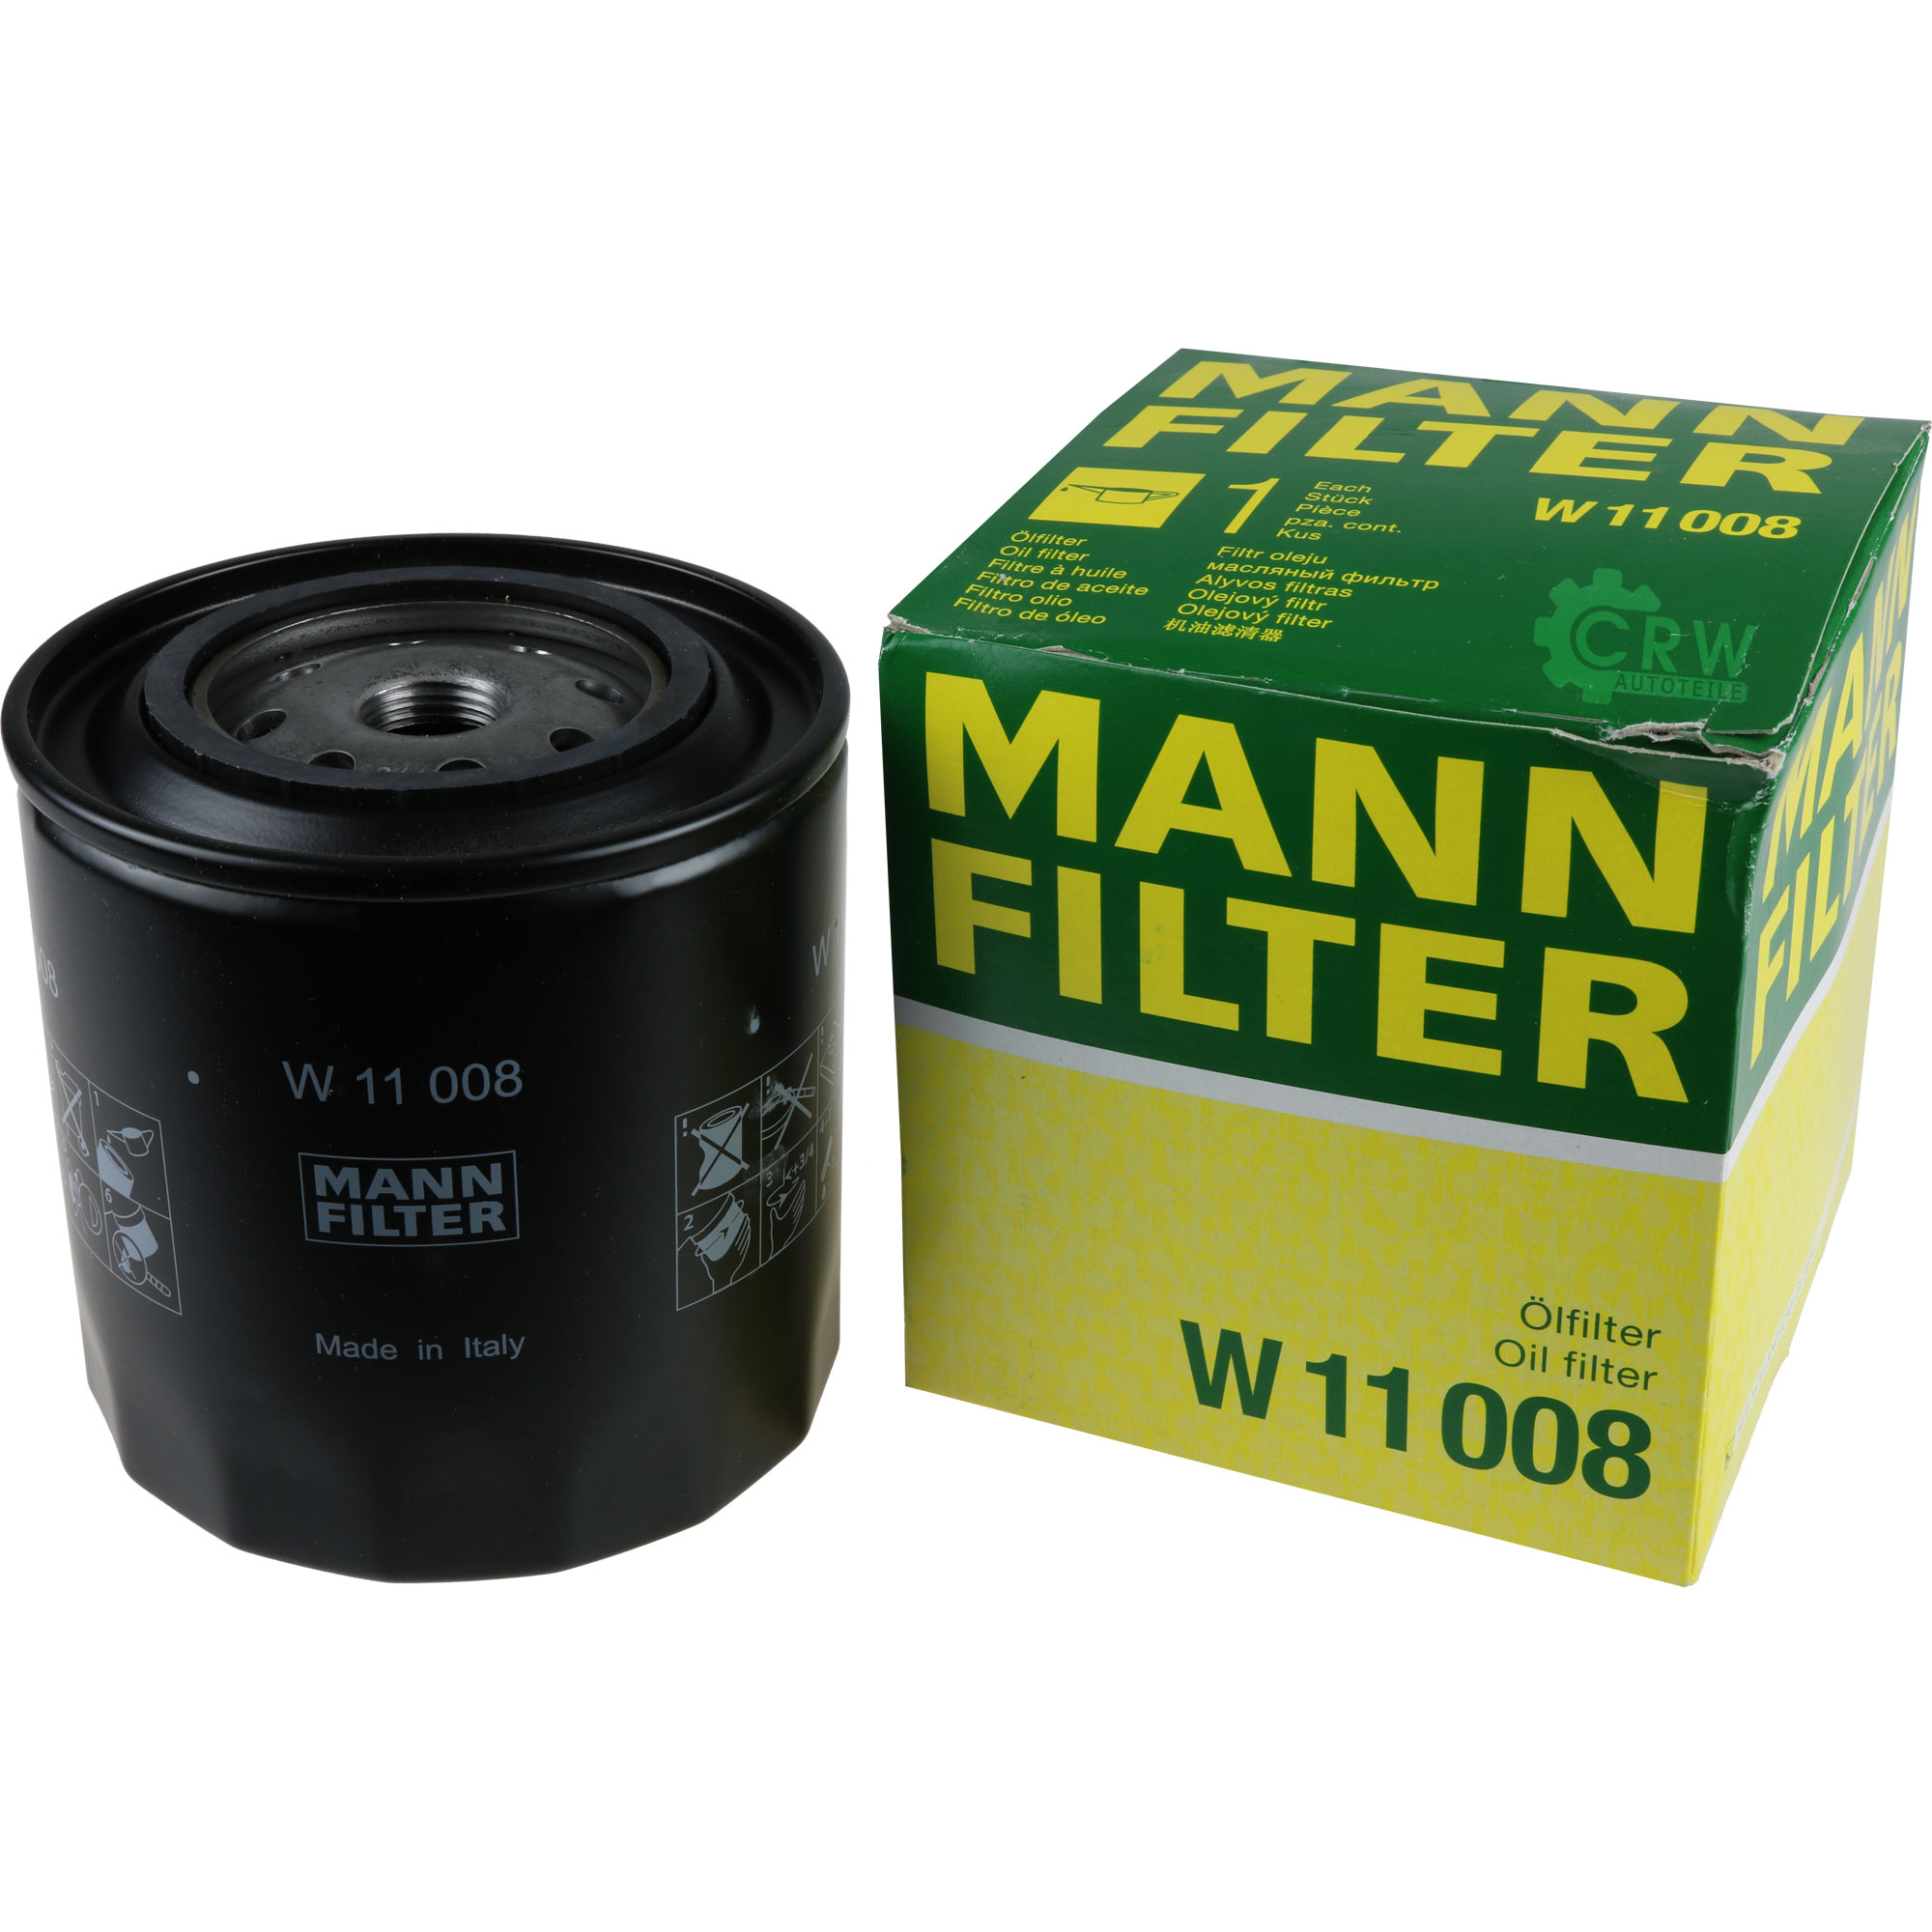 MANN Ölfilter W 11 008 Oil Filter